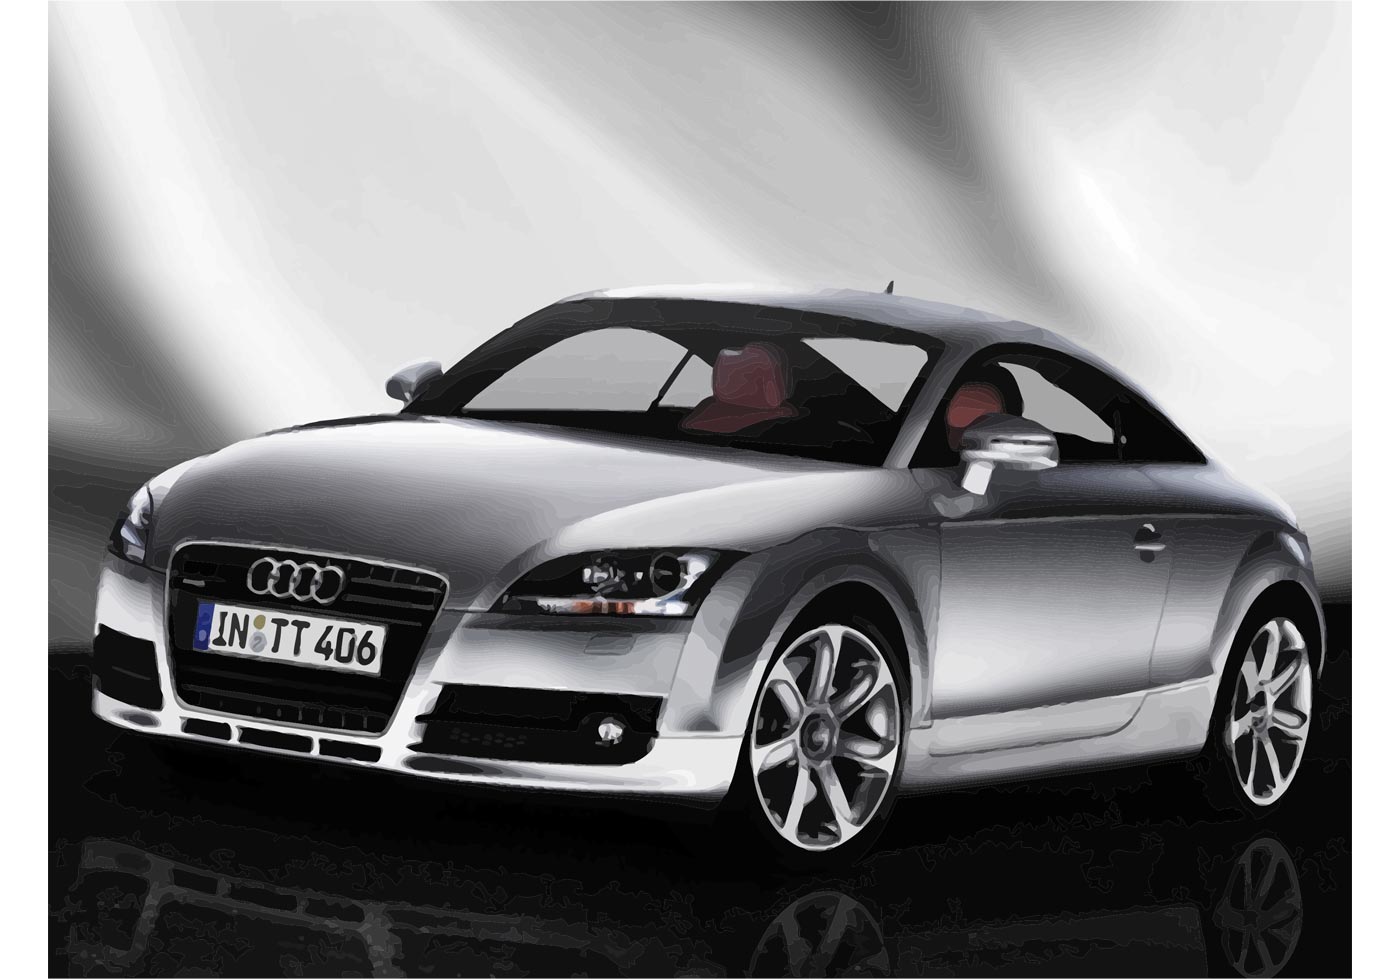  Audi TT Hintergrundbild 1400x980. Audi Tt Vektorgrafiken Und Vektor Icon Zum Kostenlosen Download